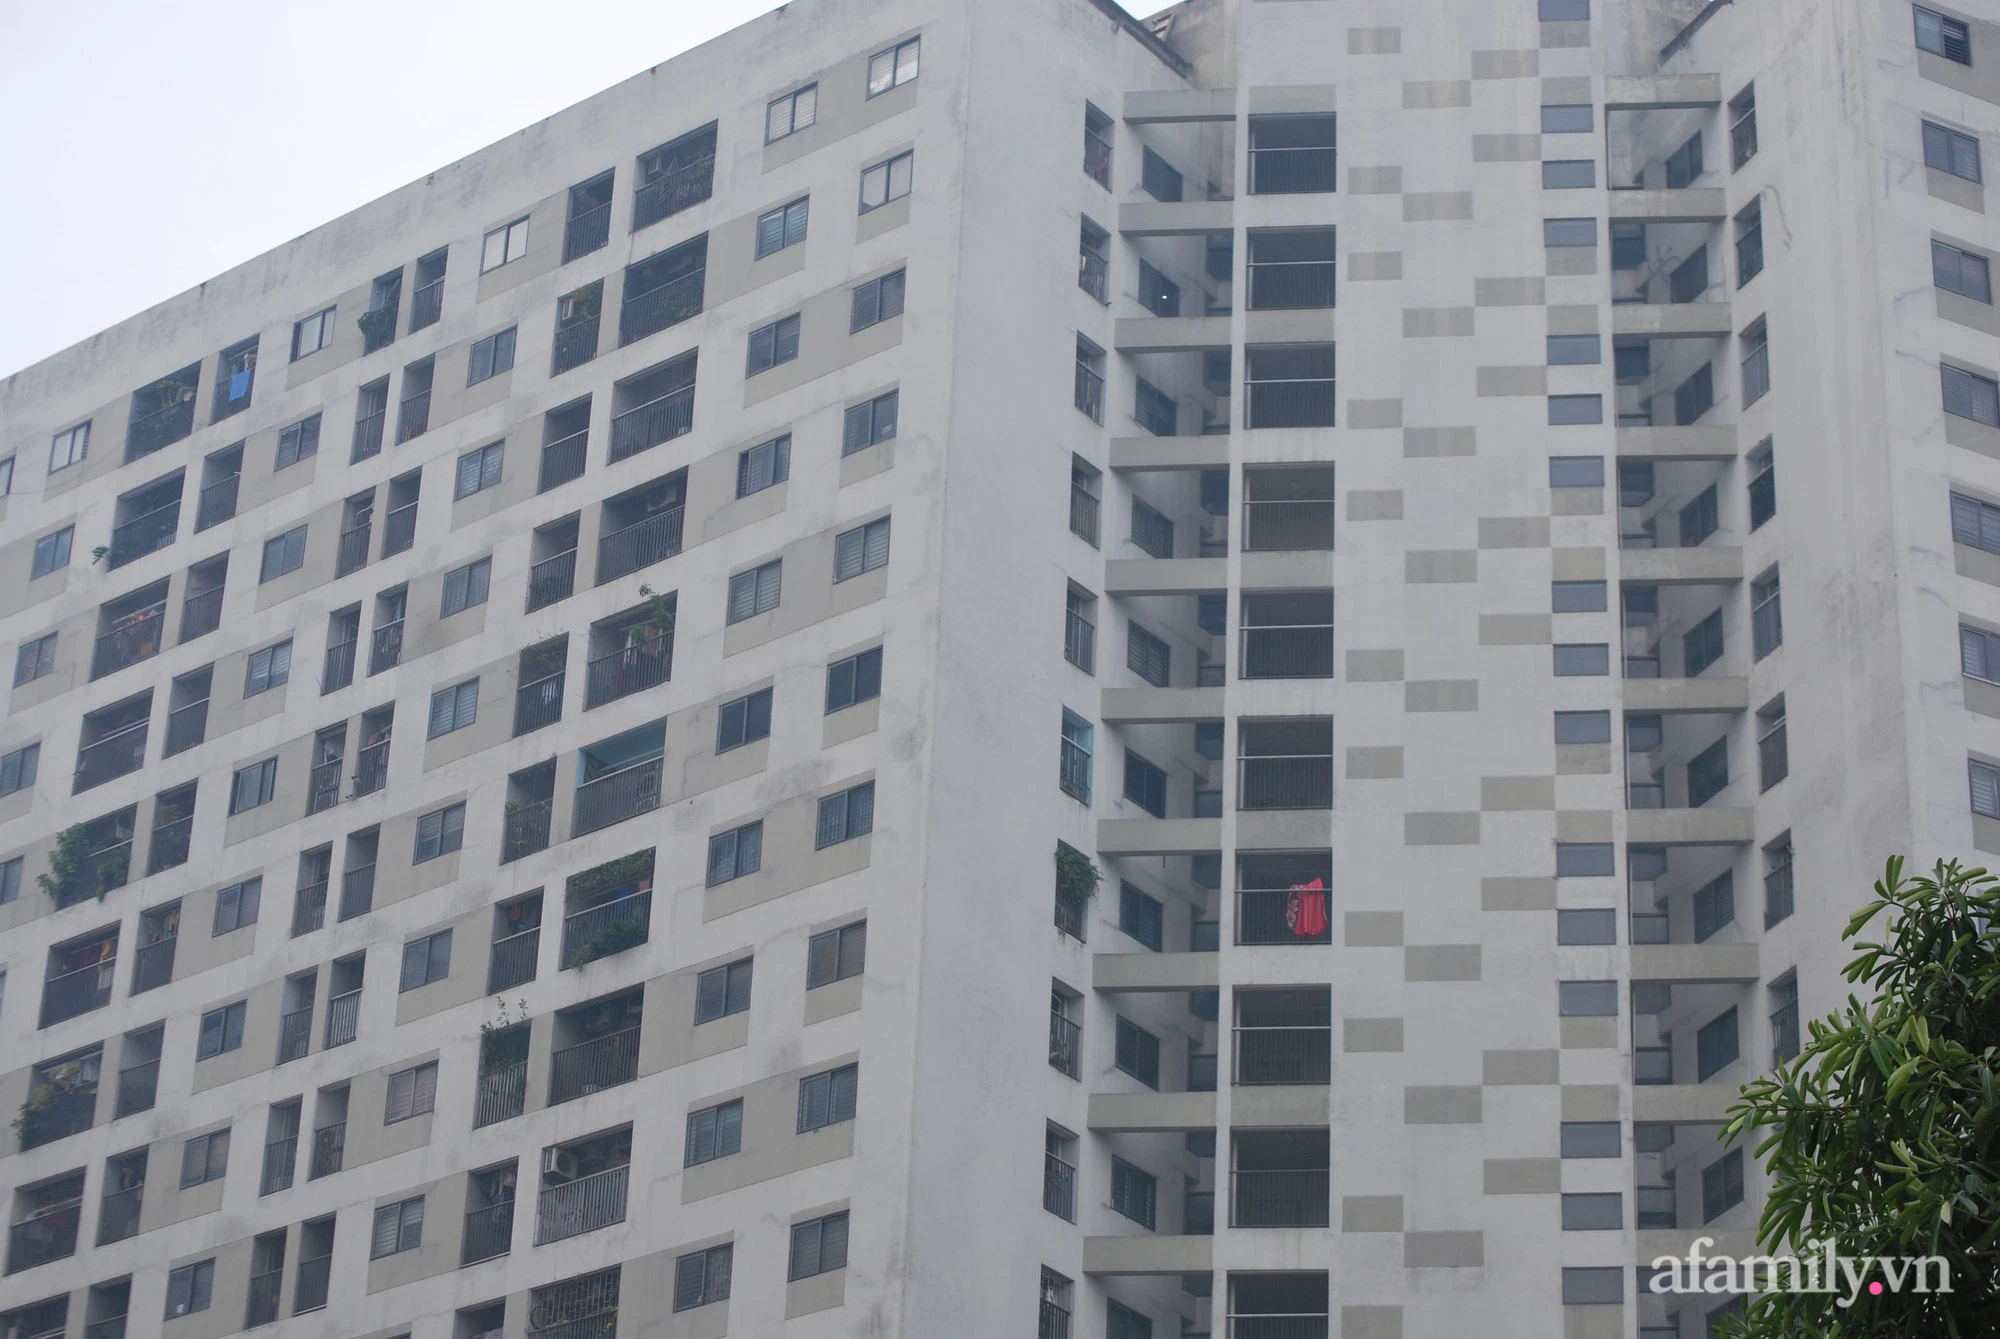 Hà Nội: Cháy máy giặt ở ban công chung cư nhiều căn hộ hoảng loạn - Ảnh 2.